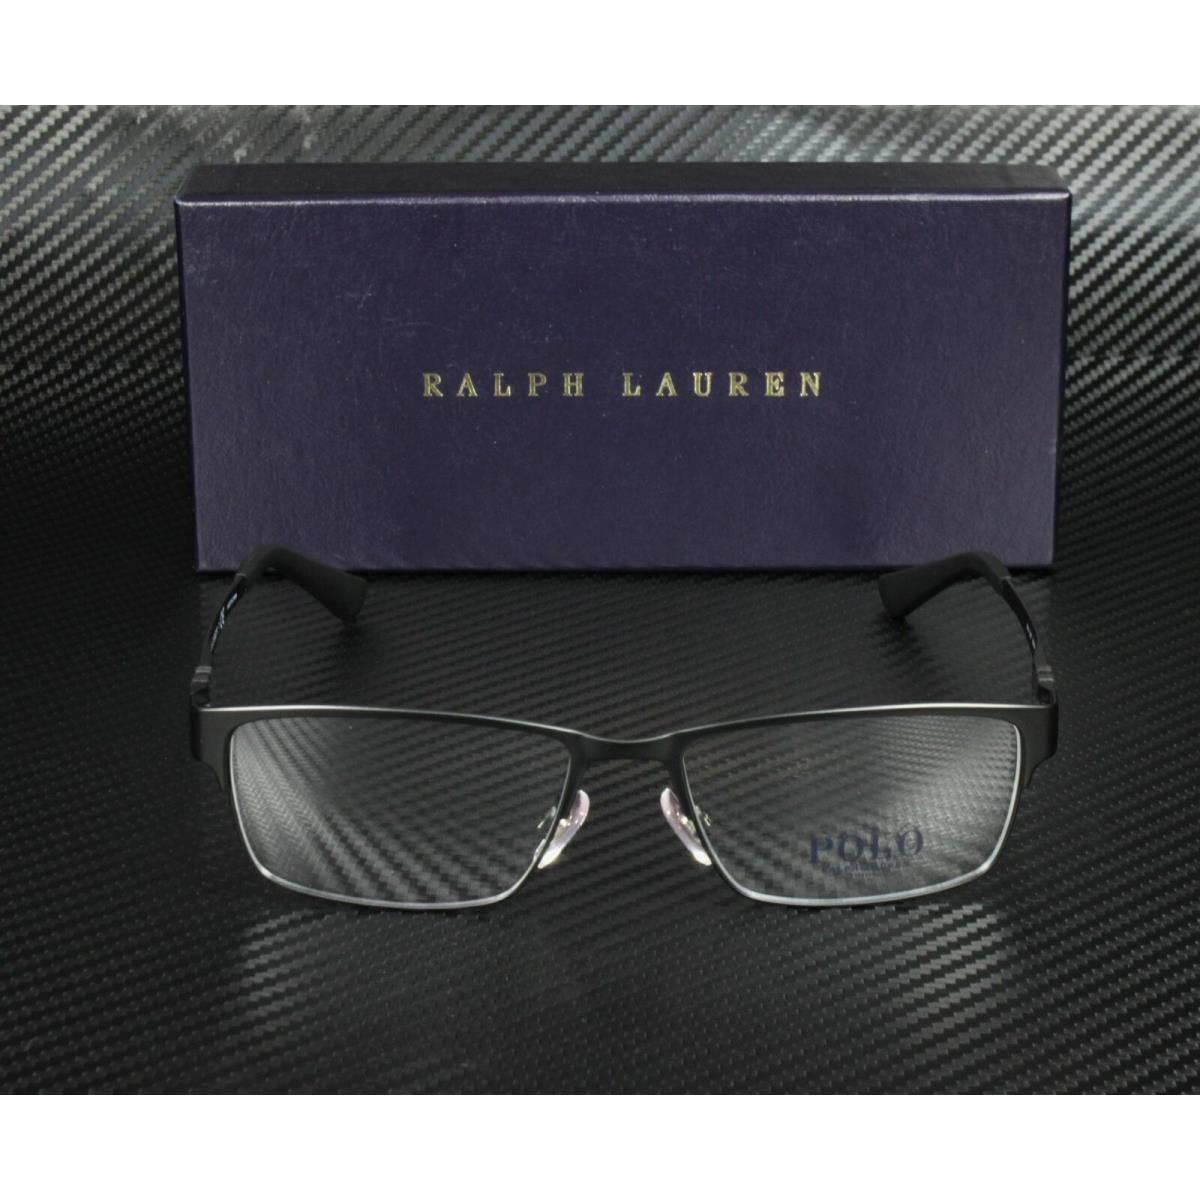 Ralph Lauren eyeglasses  - Frame: Black 0